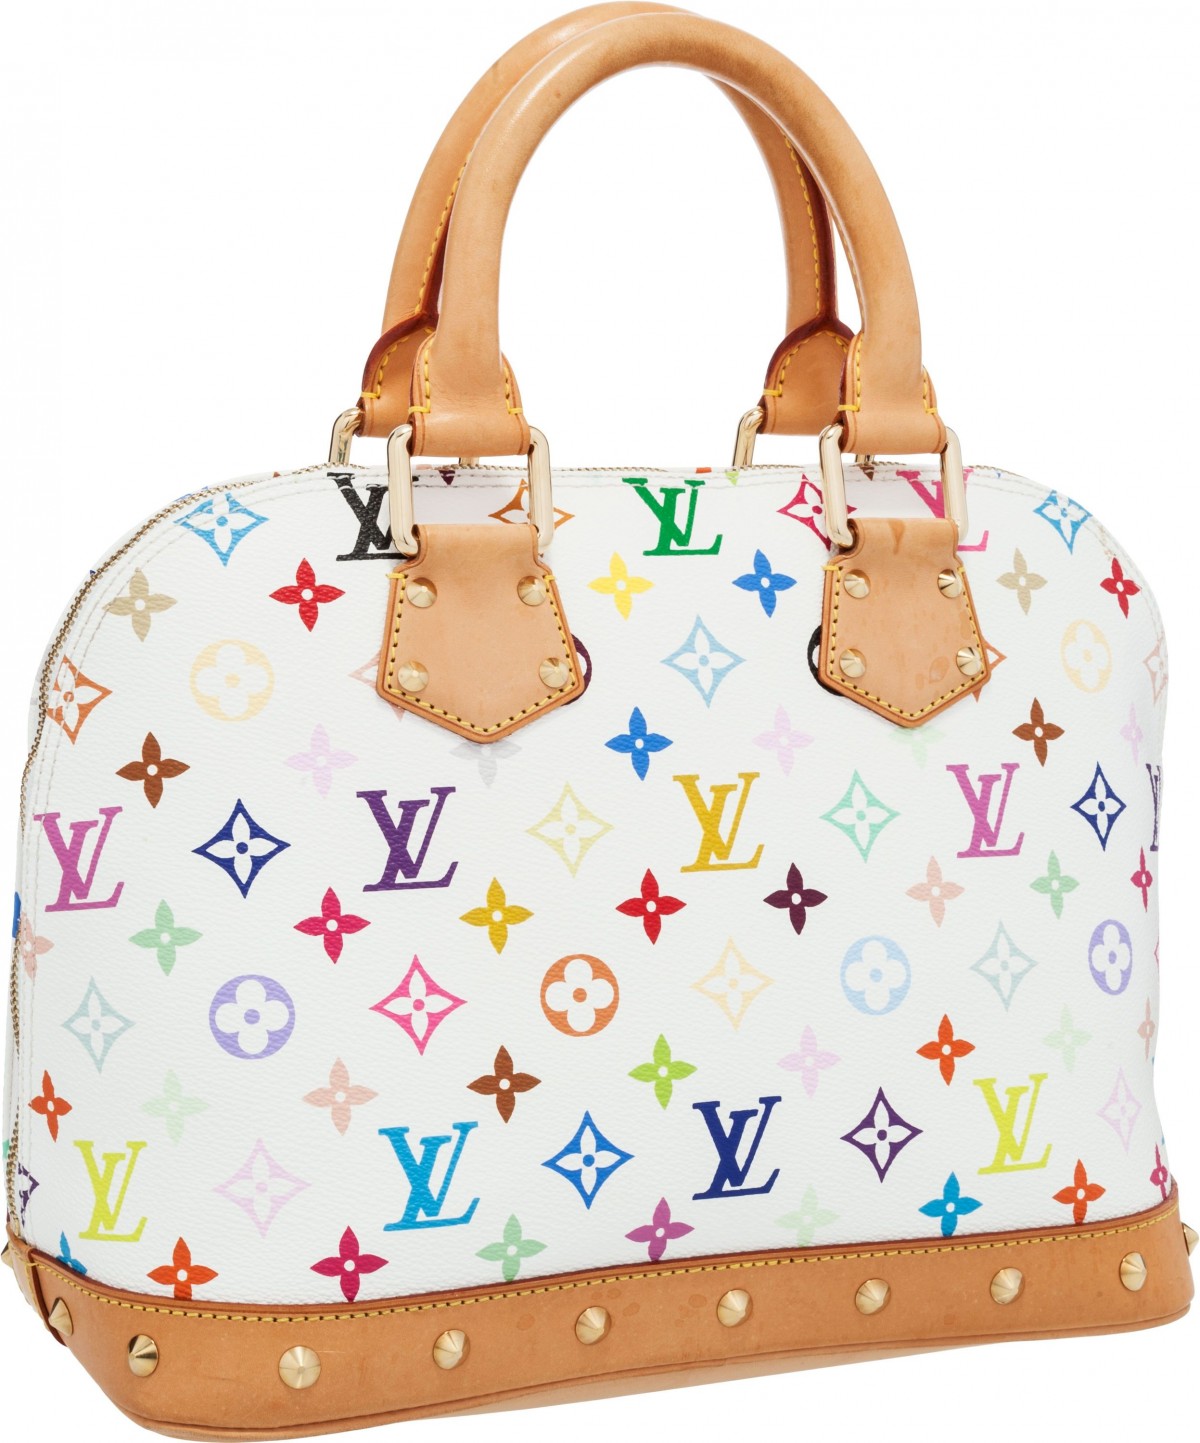 Kako mogu kupiti višebojnu repliku Louis Vuitton torbe iz Kine? (2022.)-Najkvalitetnija lažna Louis Vuitton torba online trgovina, replika dizajnerske torbe ru